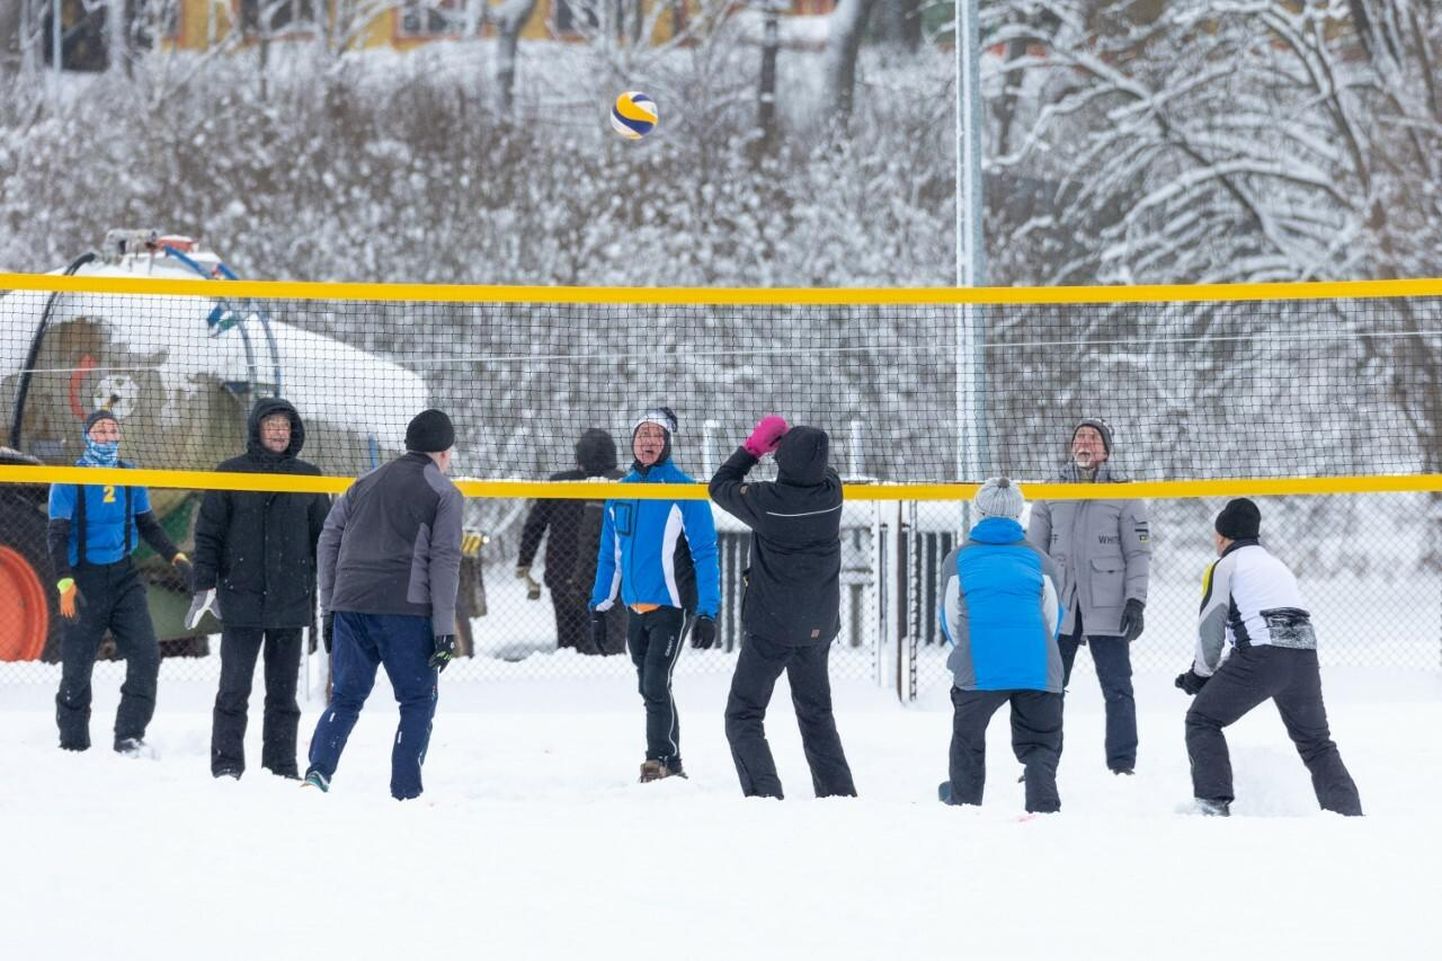 Lumine talv ei takista, kui on isu võrkpalli mängida.